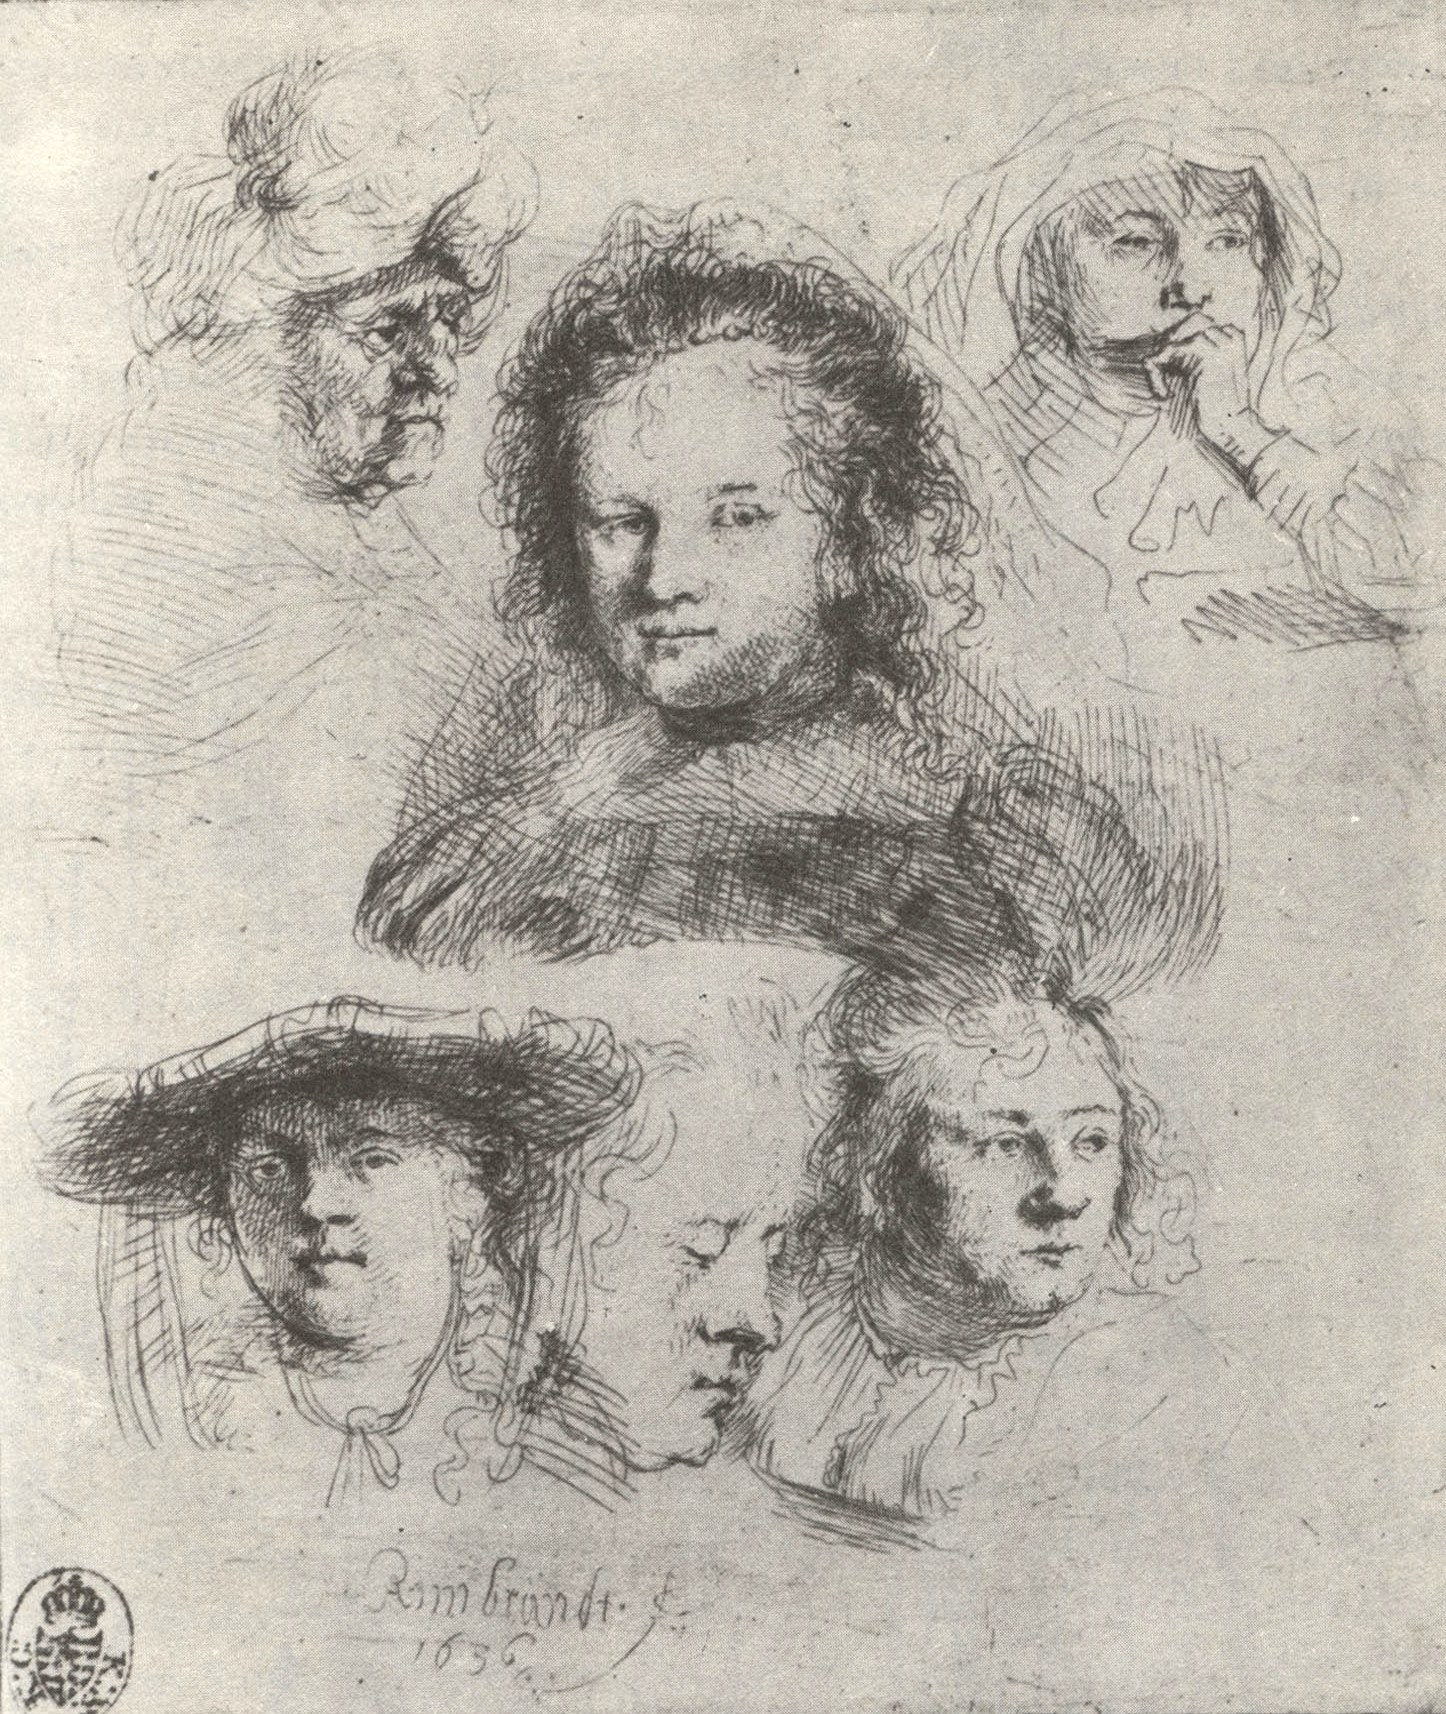 Рембрандт Харменс ван Рейн. "Штудийный лист с шестью женскими головами". Государственные художественные собрания, Дрезден.